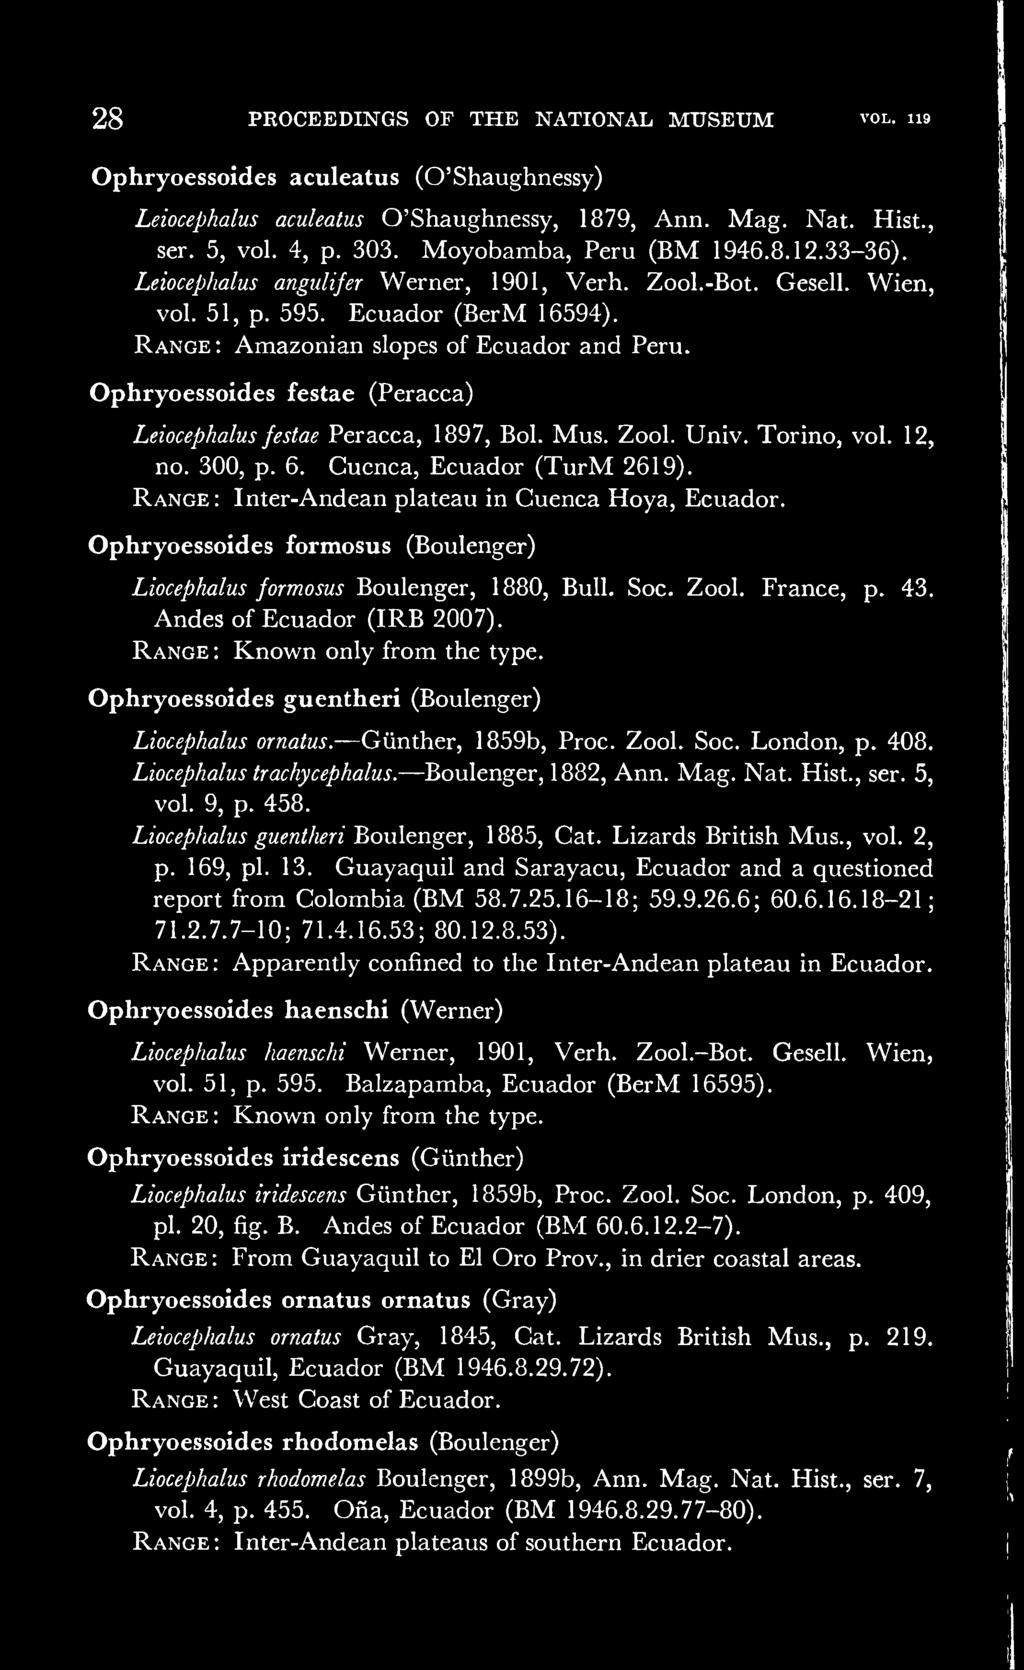 Range : Ophryoessoides festae (Peracca) Leiocephalus festae Peracca, 1897, Bol. Mus. Zool. Univ. Torino, vol. 12, no. 300, p. 6. Cucnca, Ecuador (TurM 2619).